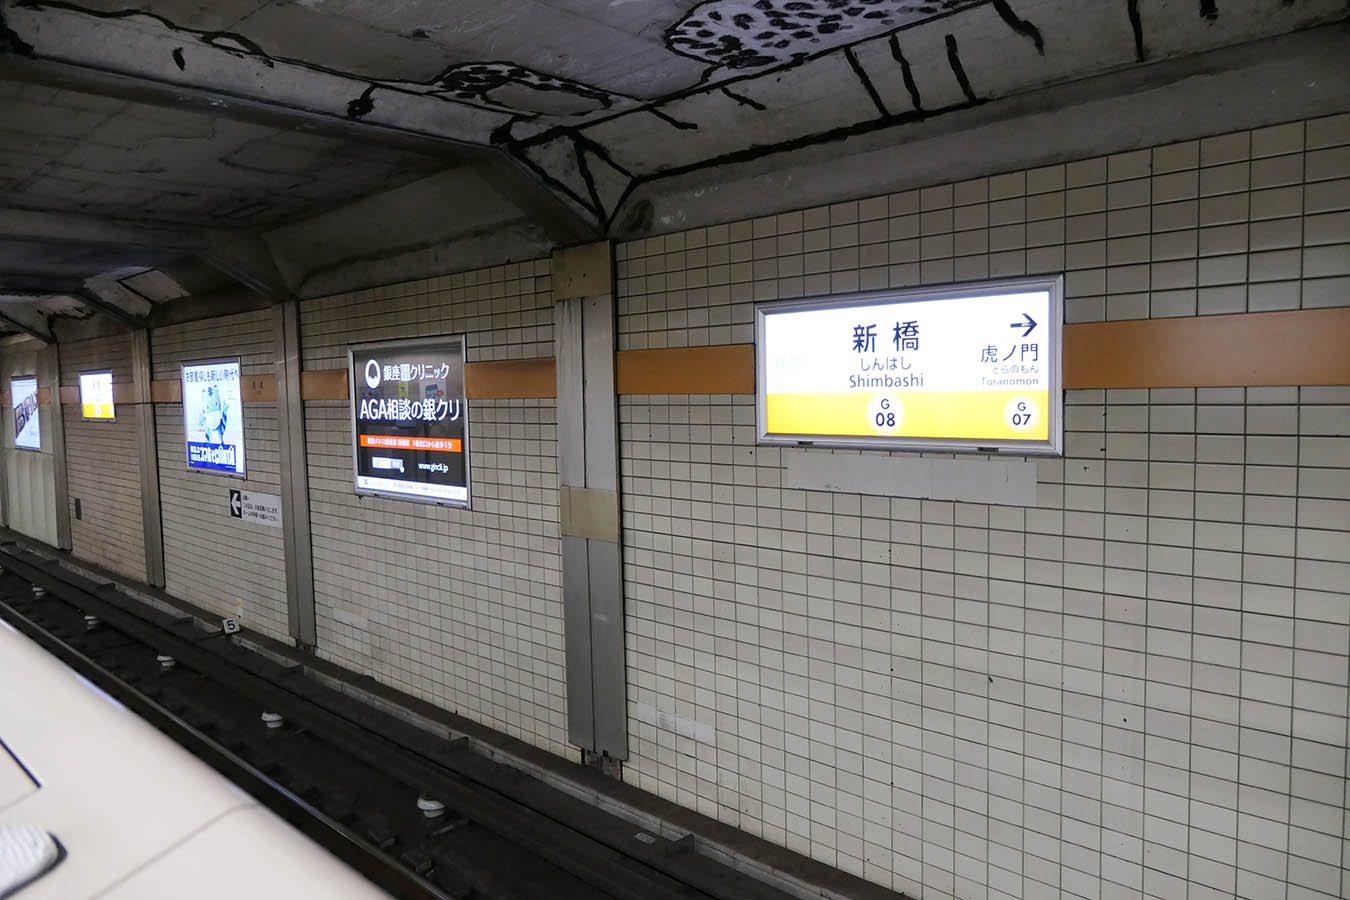 G08 銀座線 新橋駅 – ちかてつと駅の壁